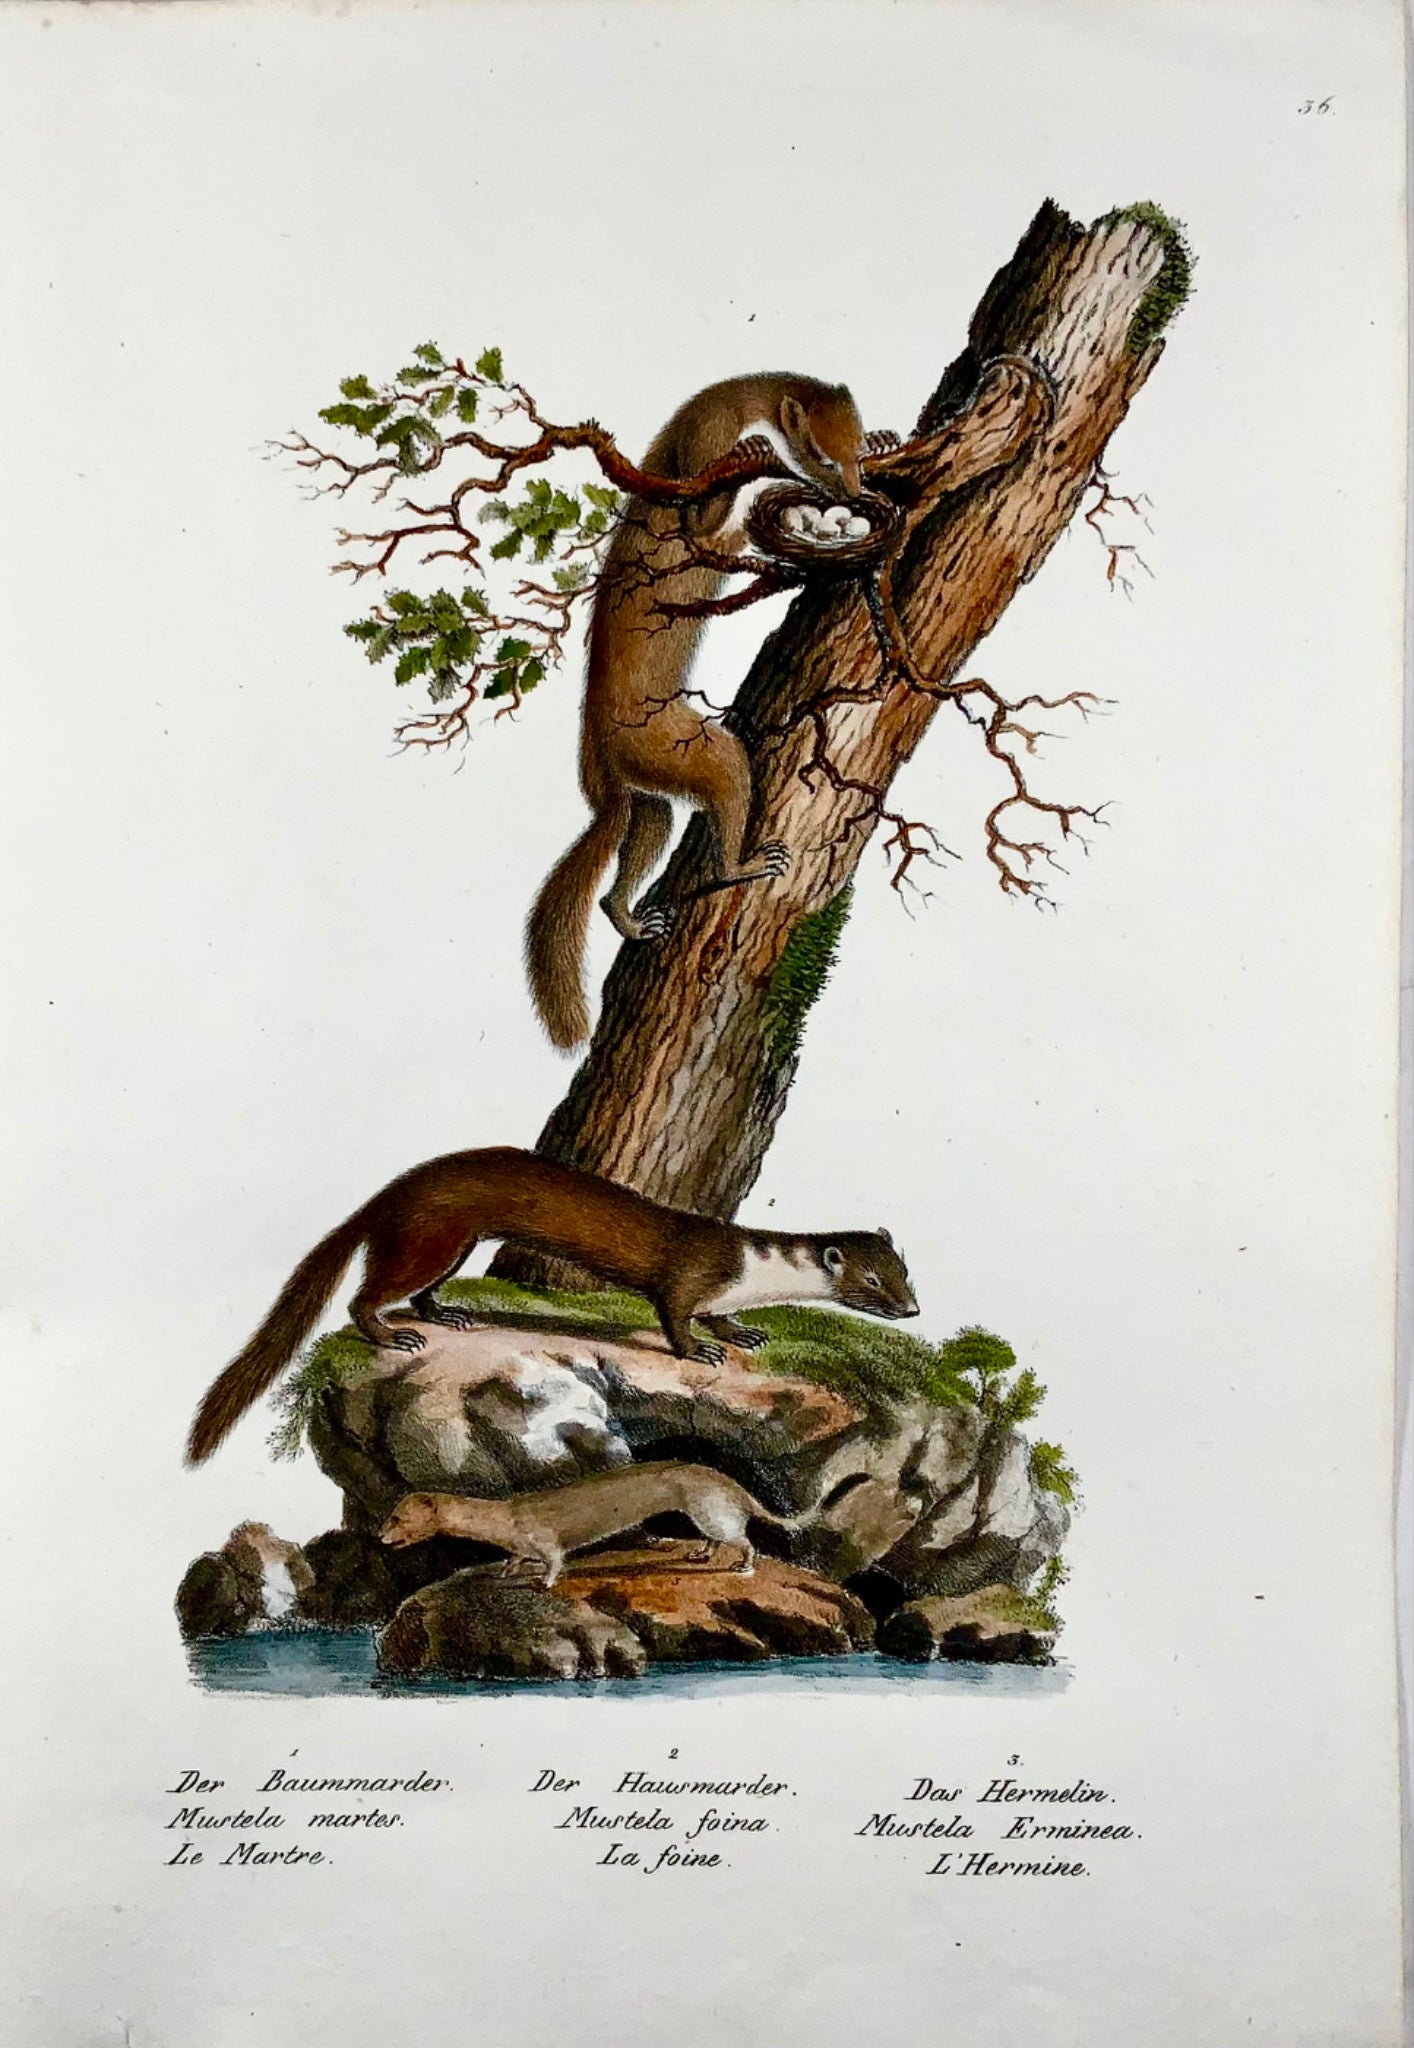 1830 Donnola, Mustela, Mammiferi, Schinz, colorati a mano, folio, litografia